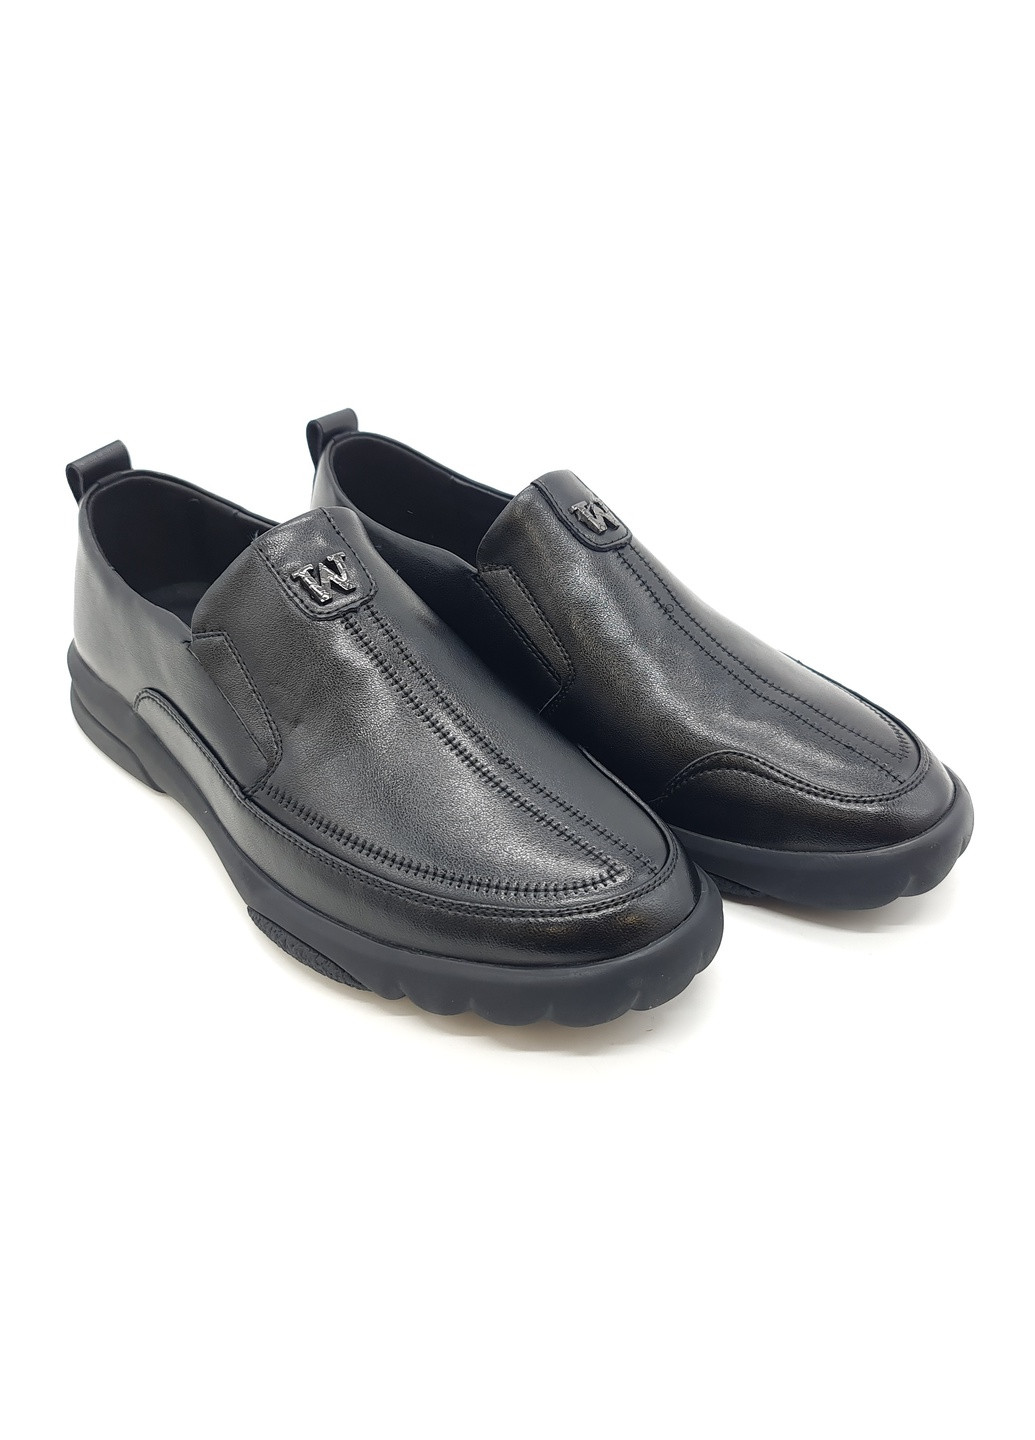 Черные чоловічі туфлі чорні шкіряні ya-11-16 26 см (р) Yalasou